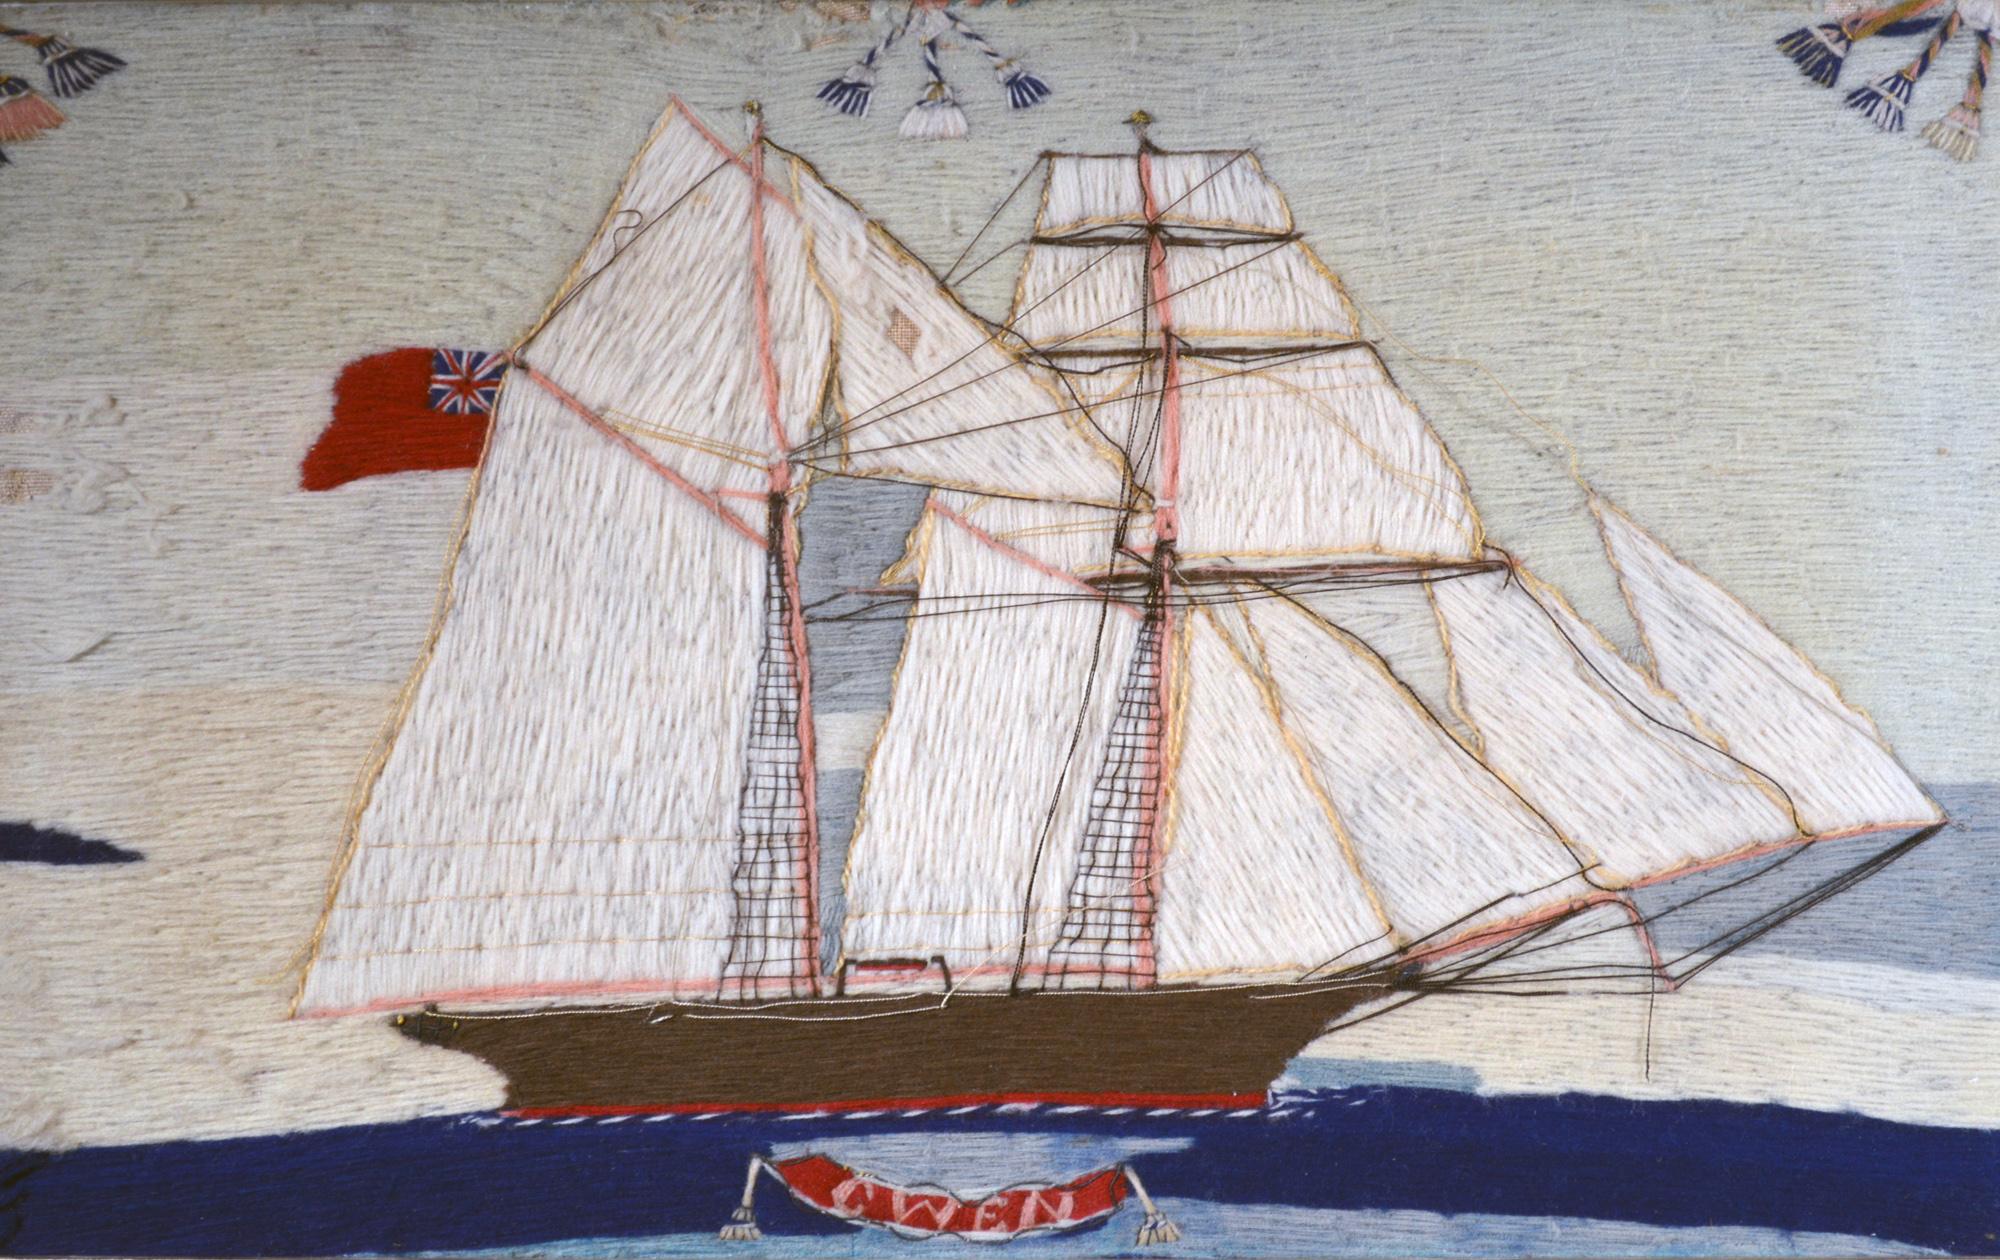 Woolwork ou Woolie des marins britanniques,
Le Gwen,
Circa 1875

Ce petit lainage de marin britannique représente une vue tribord du brigantin Gwen naviguant sur une mer calme et bleue et arborant un drapeau rouge. Le nom du navire est inscrit